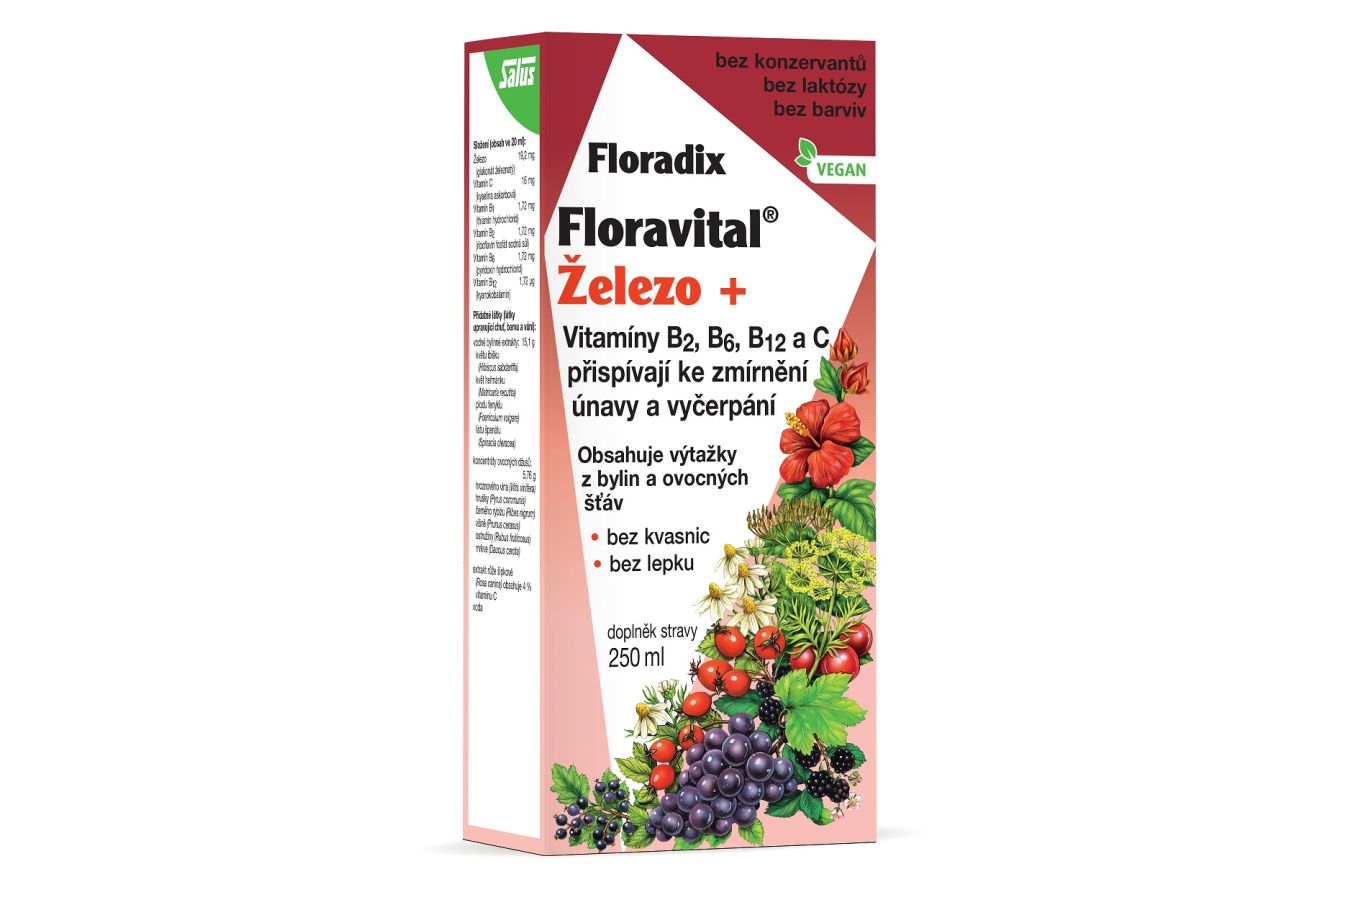 Salus Floradix Floravital Železo+ je vhodný i pro vegany